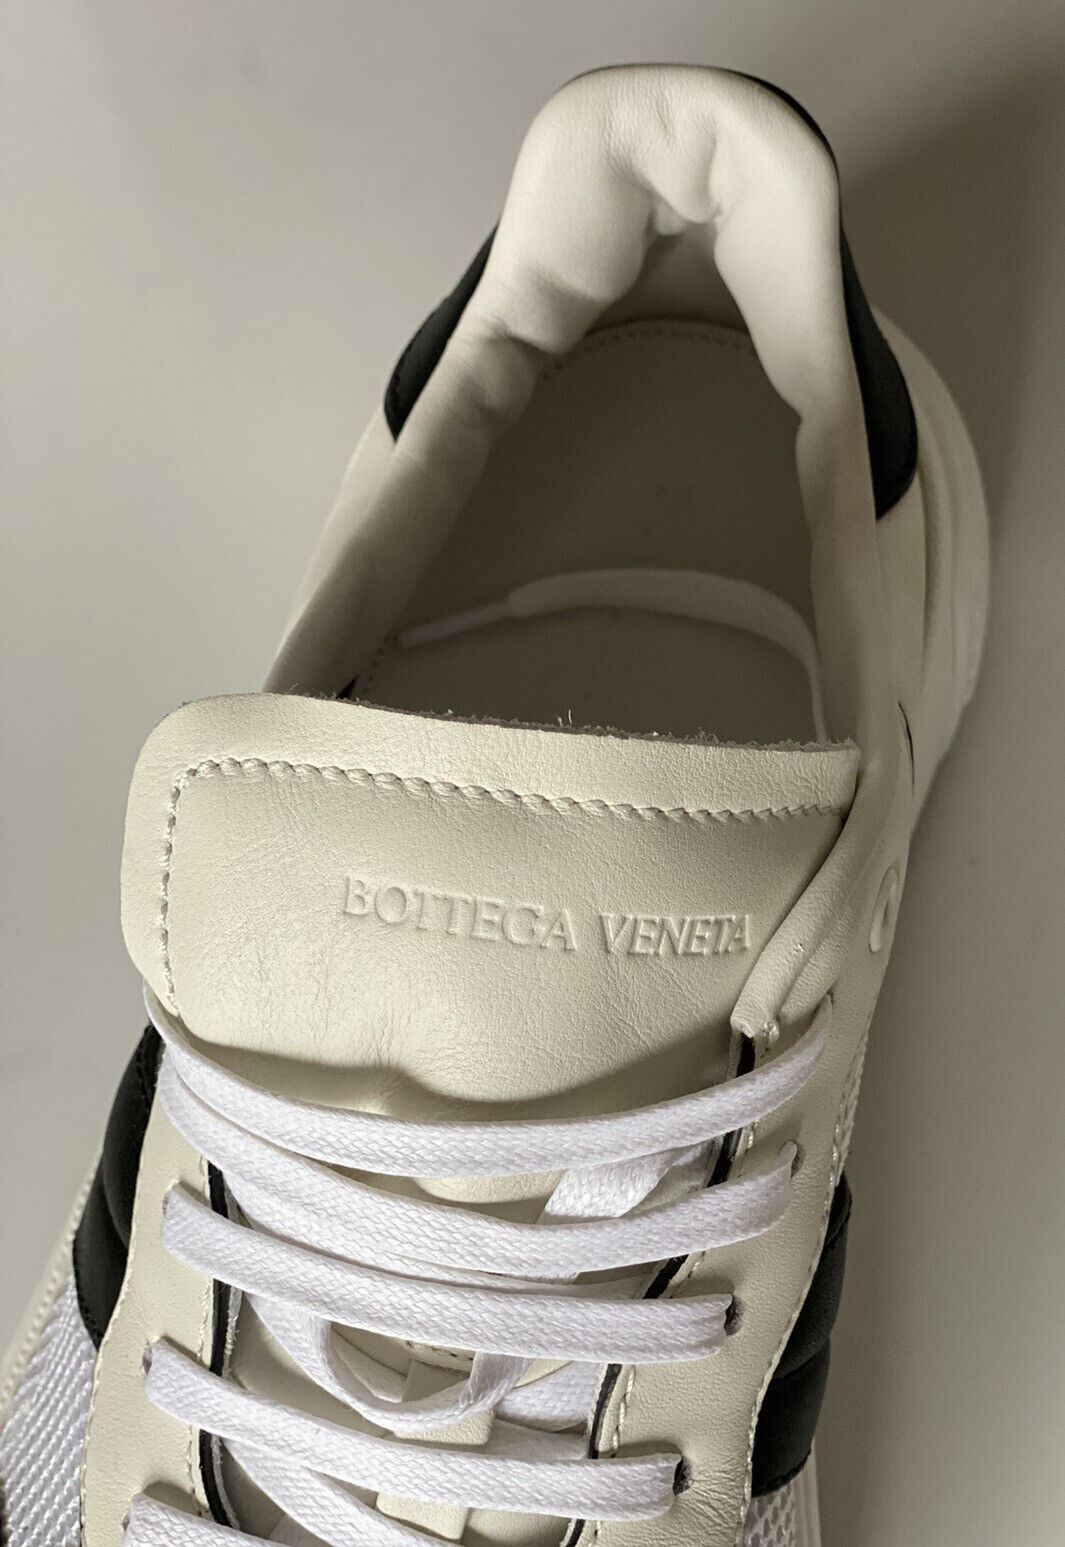 NIB $ 790 Bottega Veneta Herren-Sneaker aus Leder und Mesh Weiß/Schwarz 12 US 565646